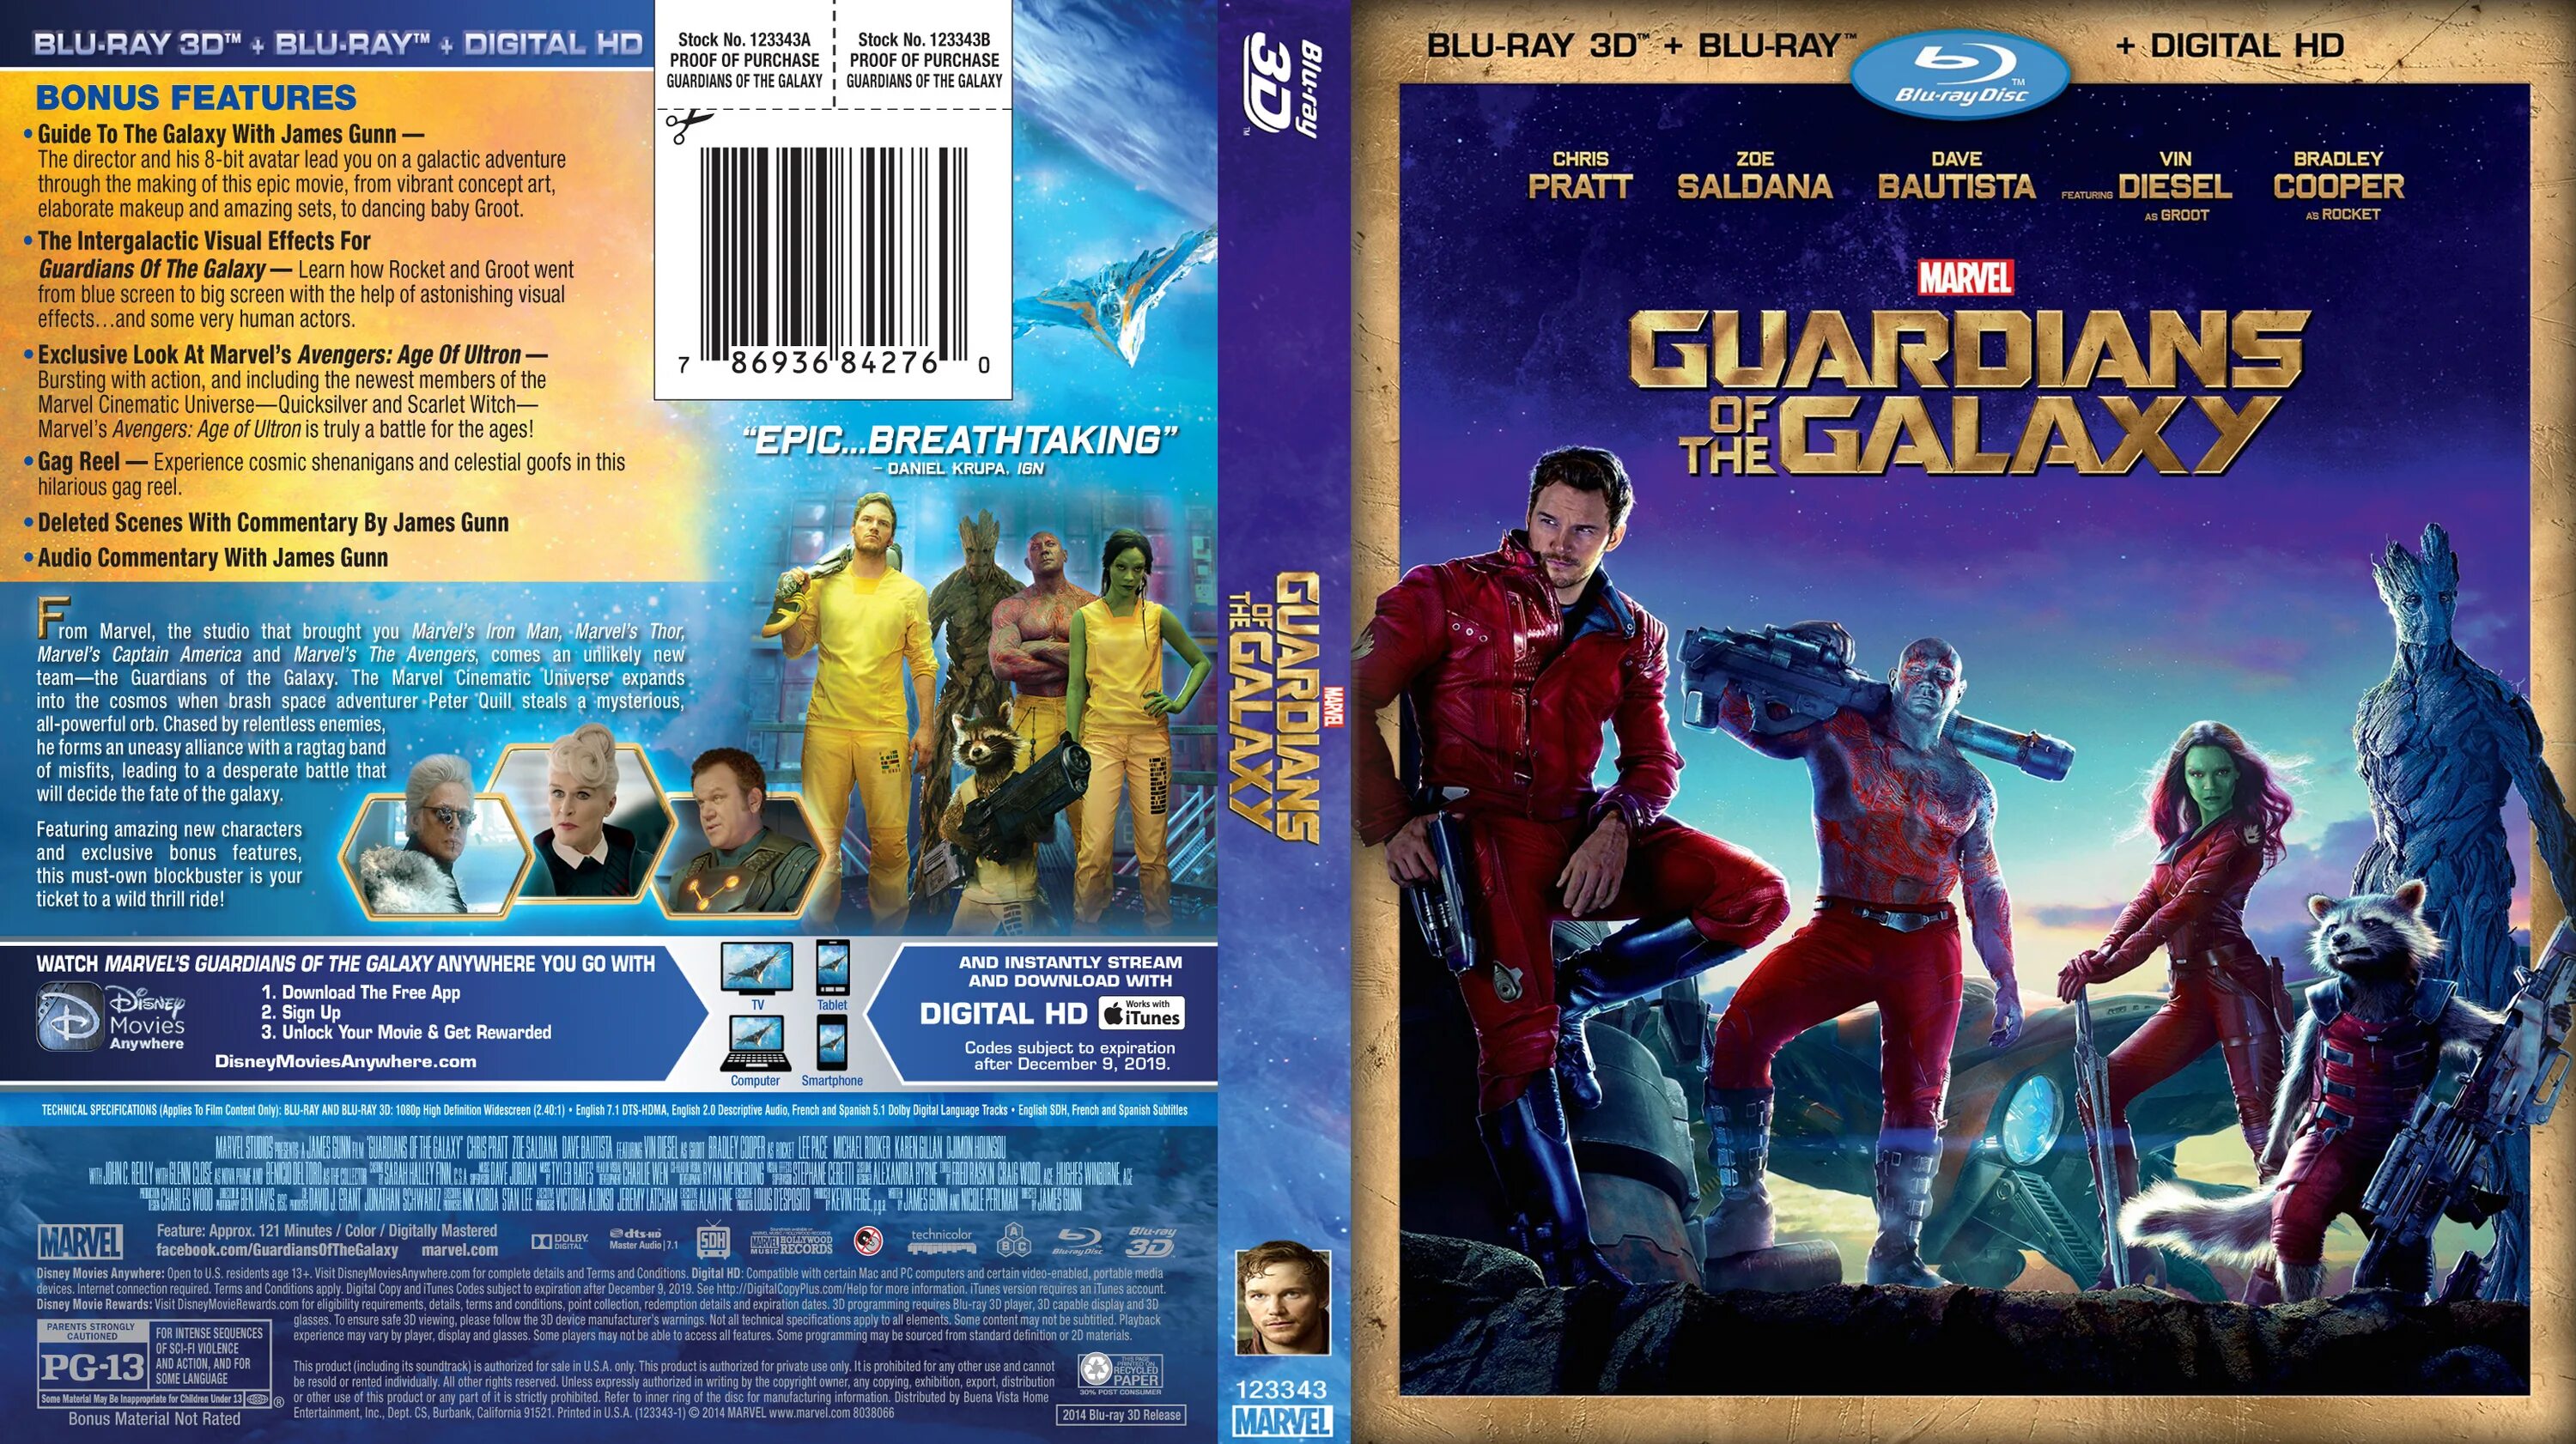 Blu ray магическая битва 2. Blu ray 3d Стражи Галактики. Стражи Галактики 2 3d обложка Blu ray. Стражи Галактики 2 Blu-ray Cover. Стражи Галактики 3 обложка двд.